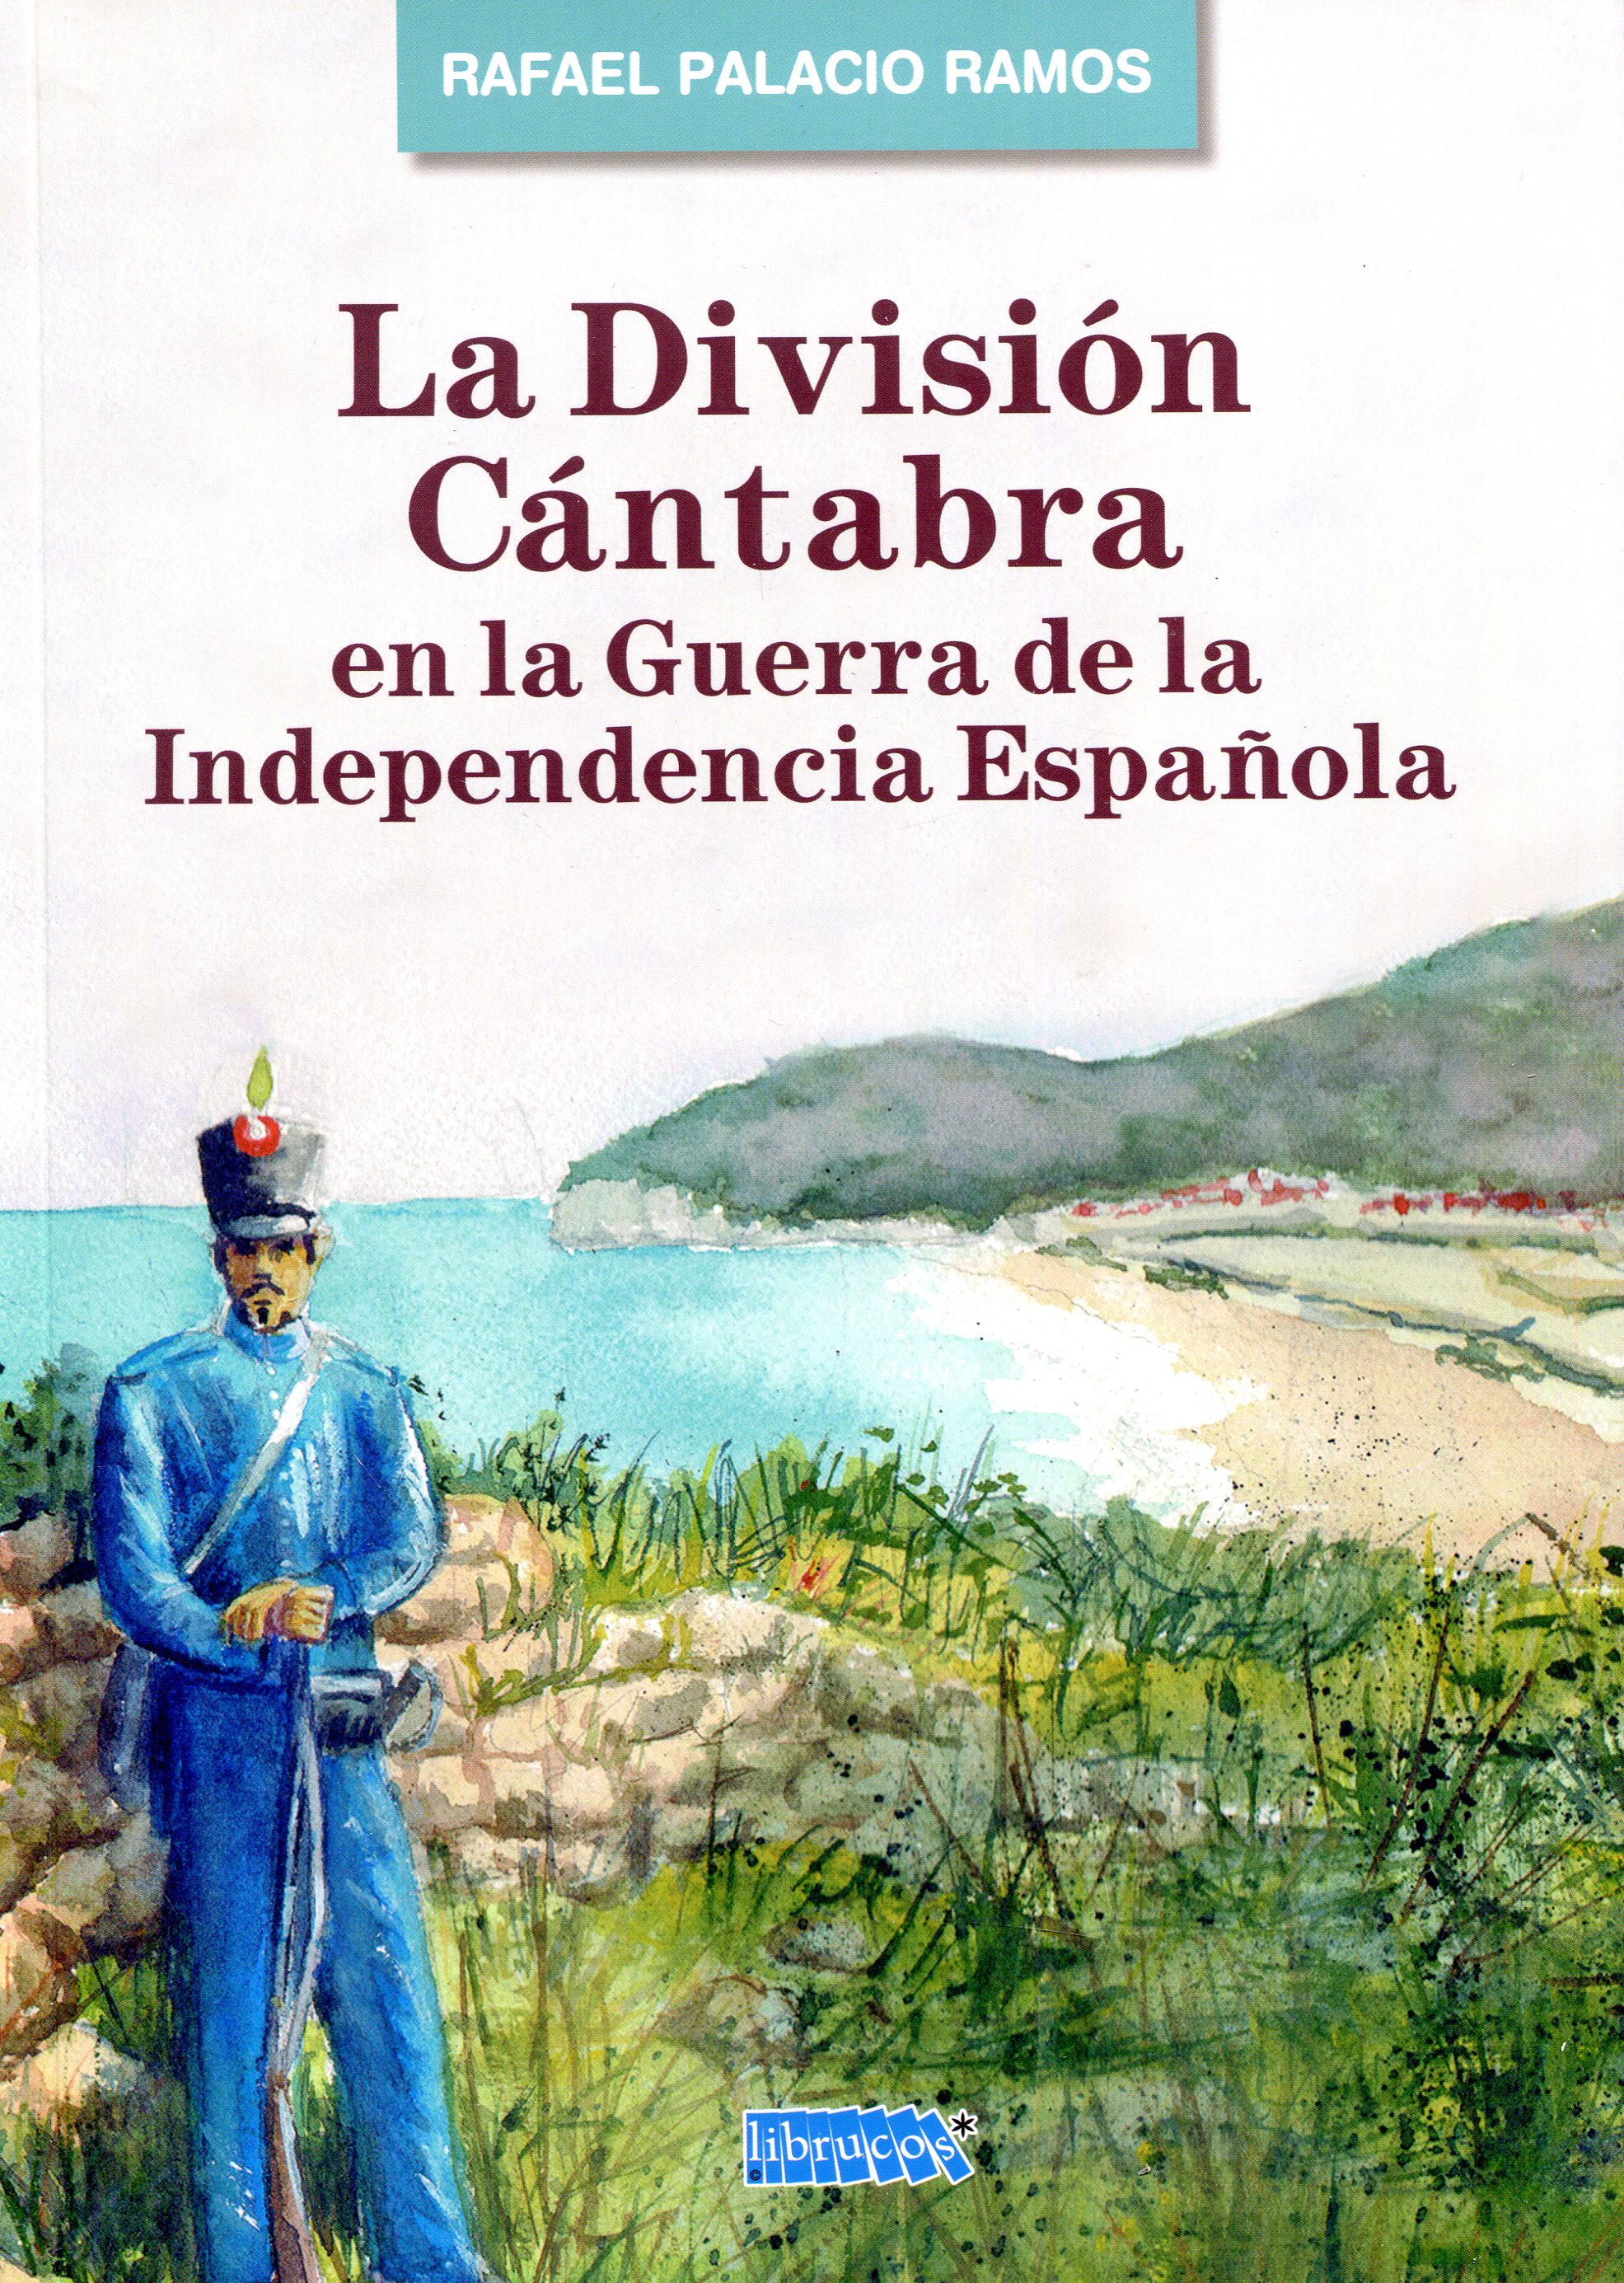 La División Cántabra en la Guerra de la Independencia Española